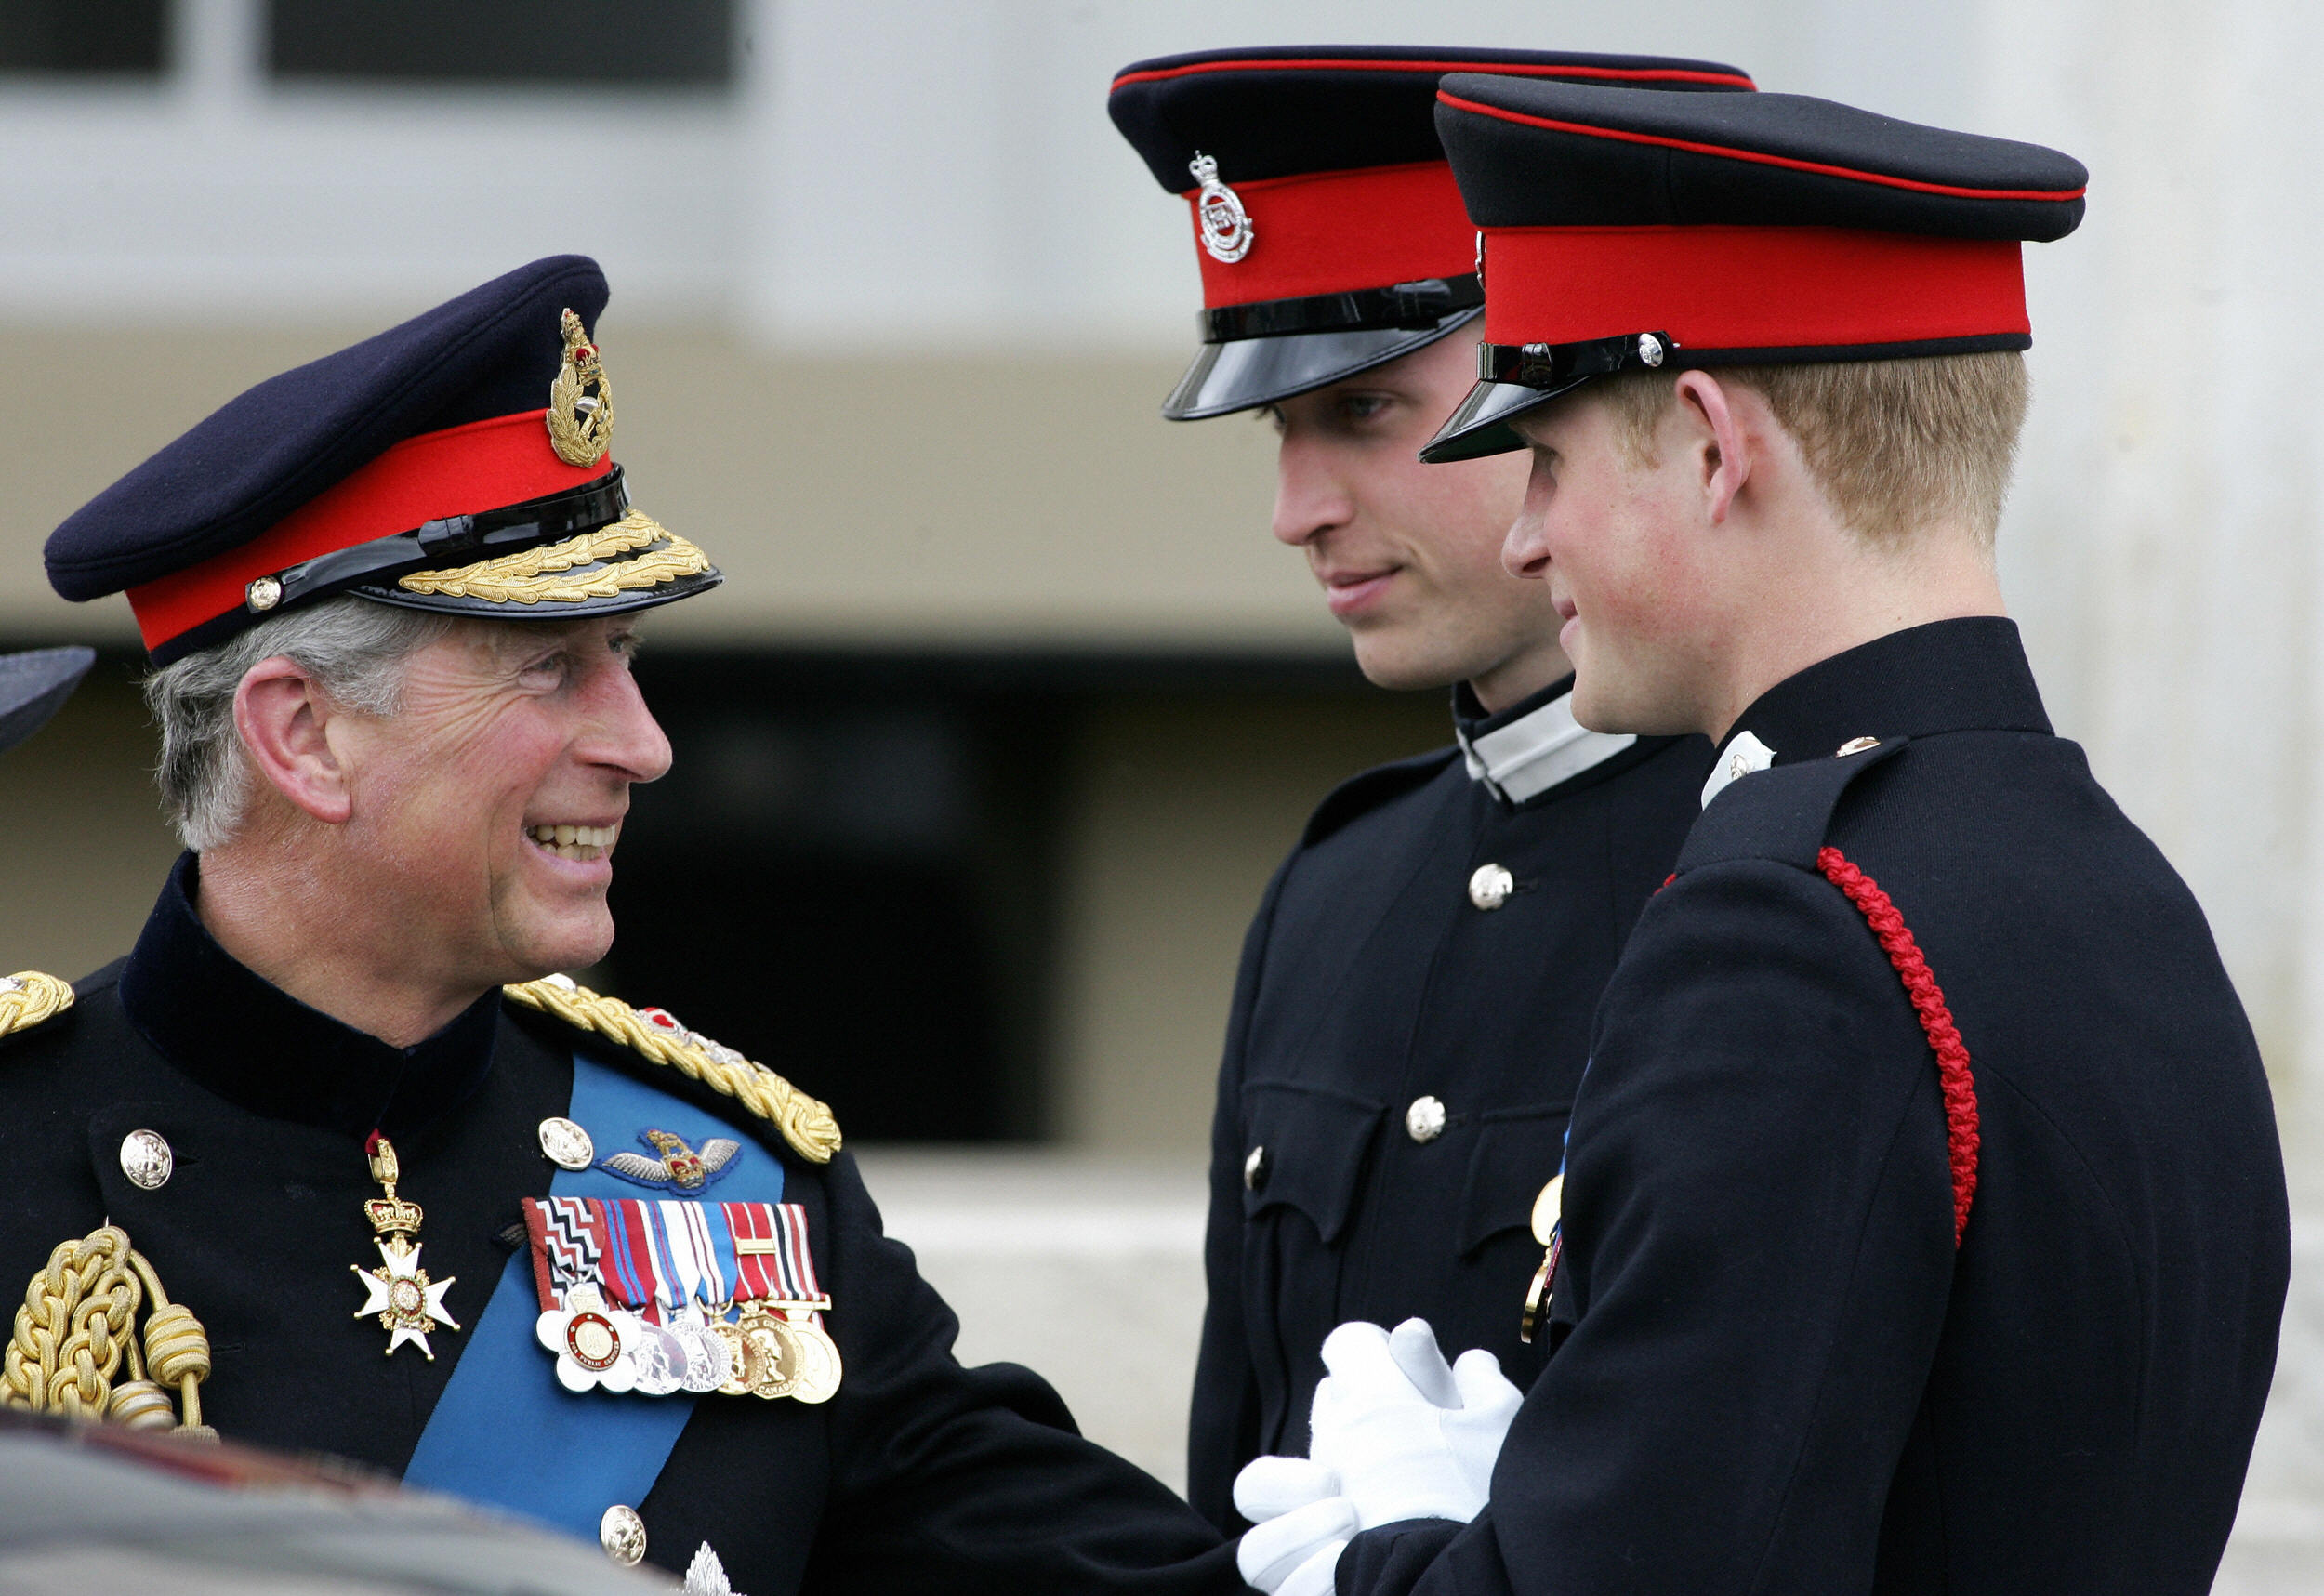 Le prince Charles (à gauche) s'entretient avec ses deux fils, les princes William (à droite) et Harry (à gauche), après avoir assisté à la parade du souverain à l'Académie militaire royale de Sandhurst, dans le sud de l'Angleterre, le 12 avril 2006. | Source : Getty Images